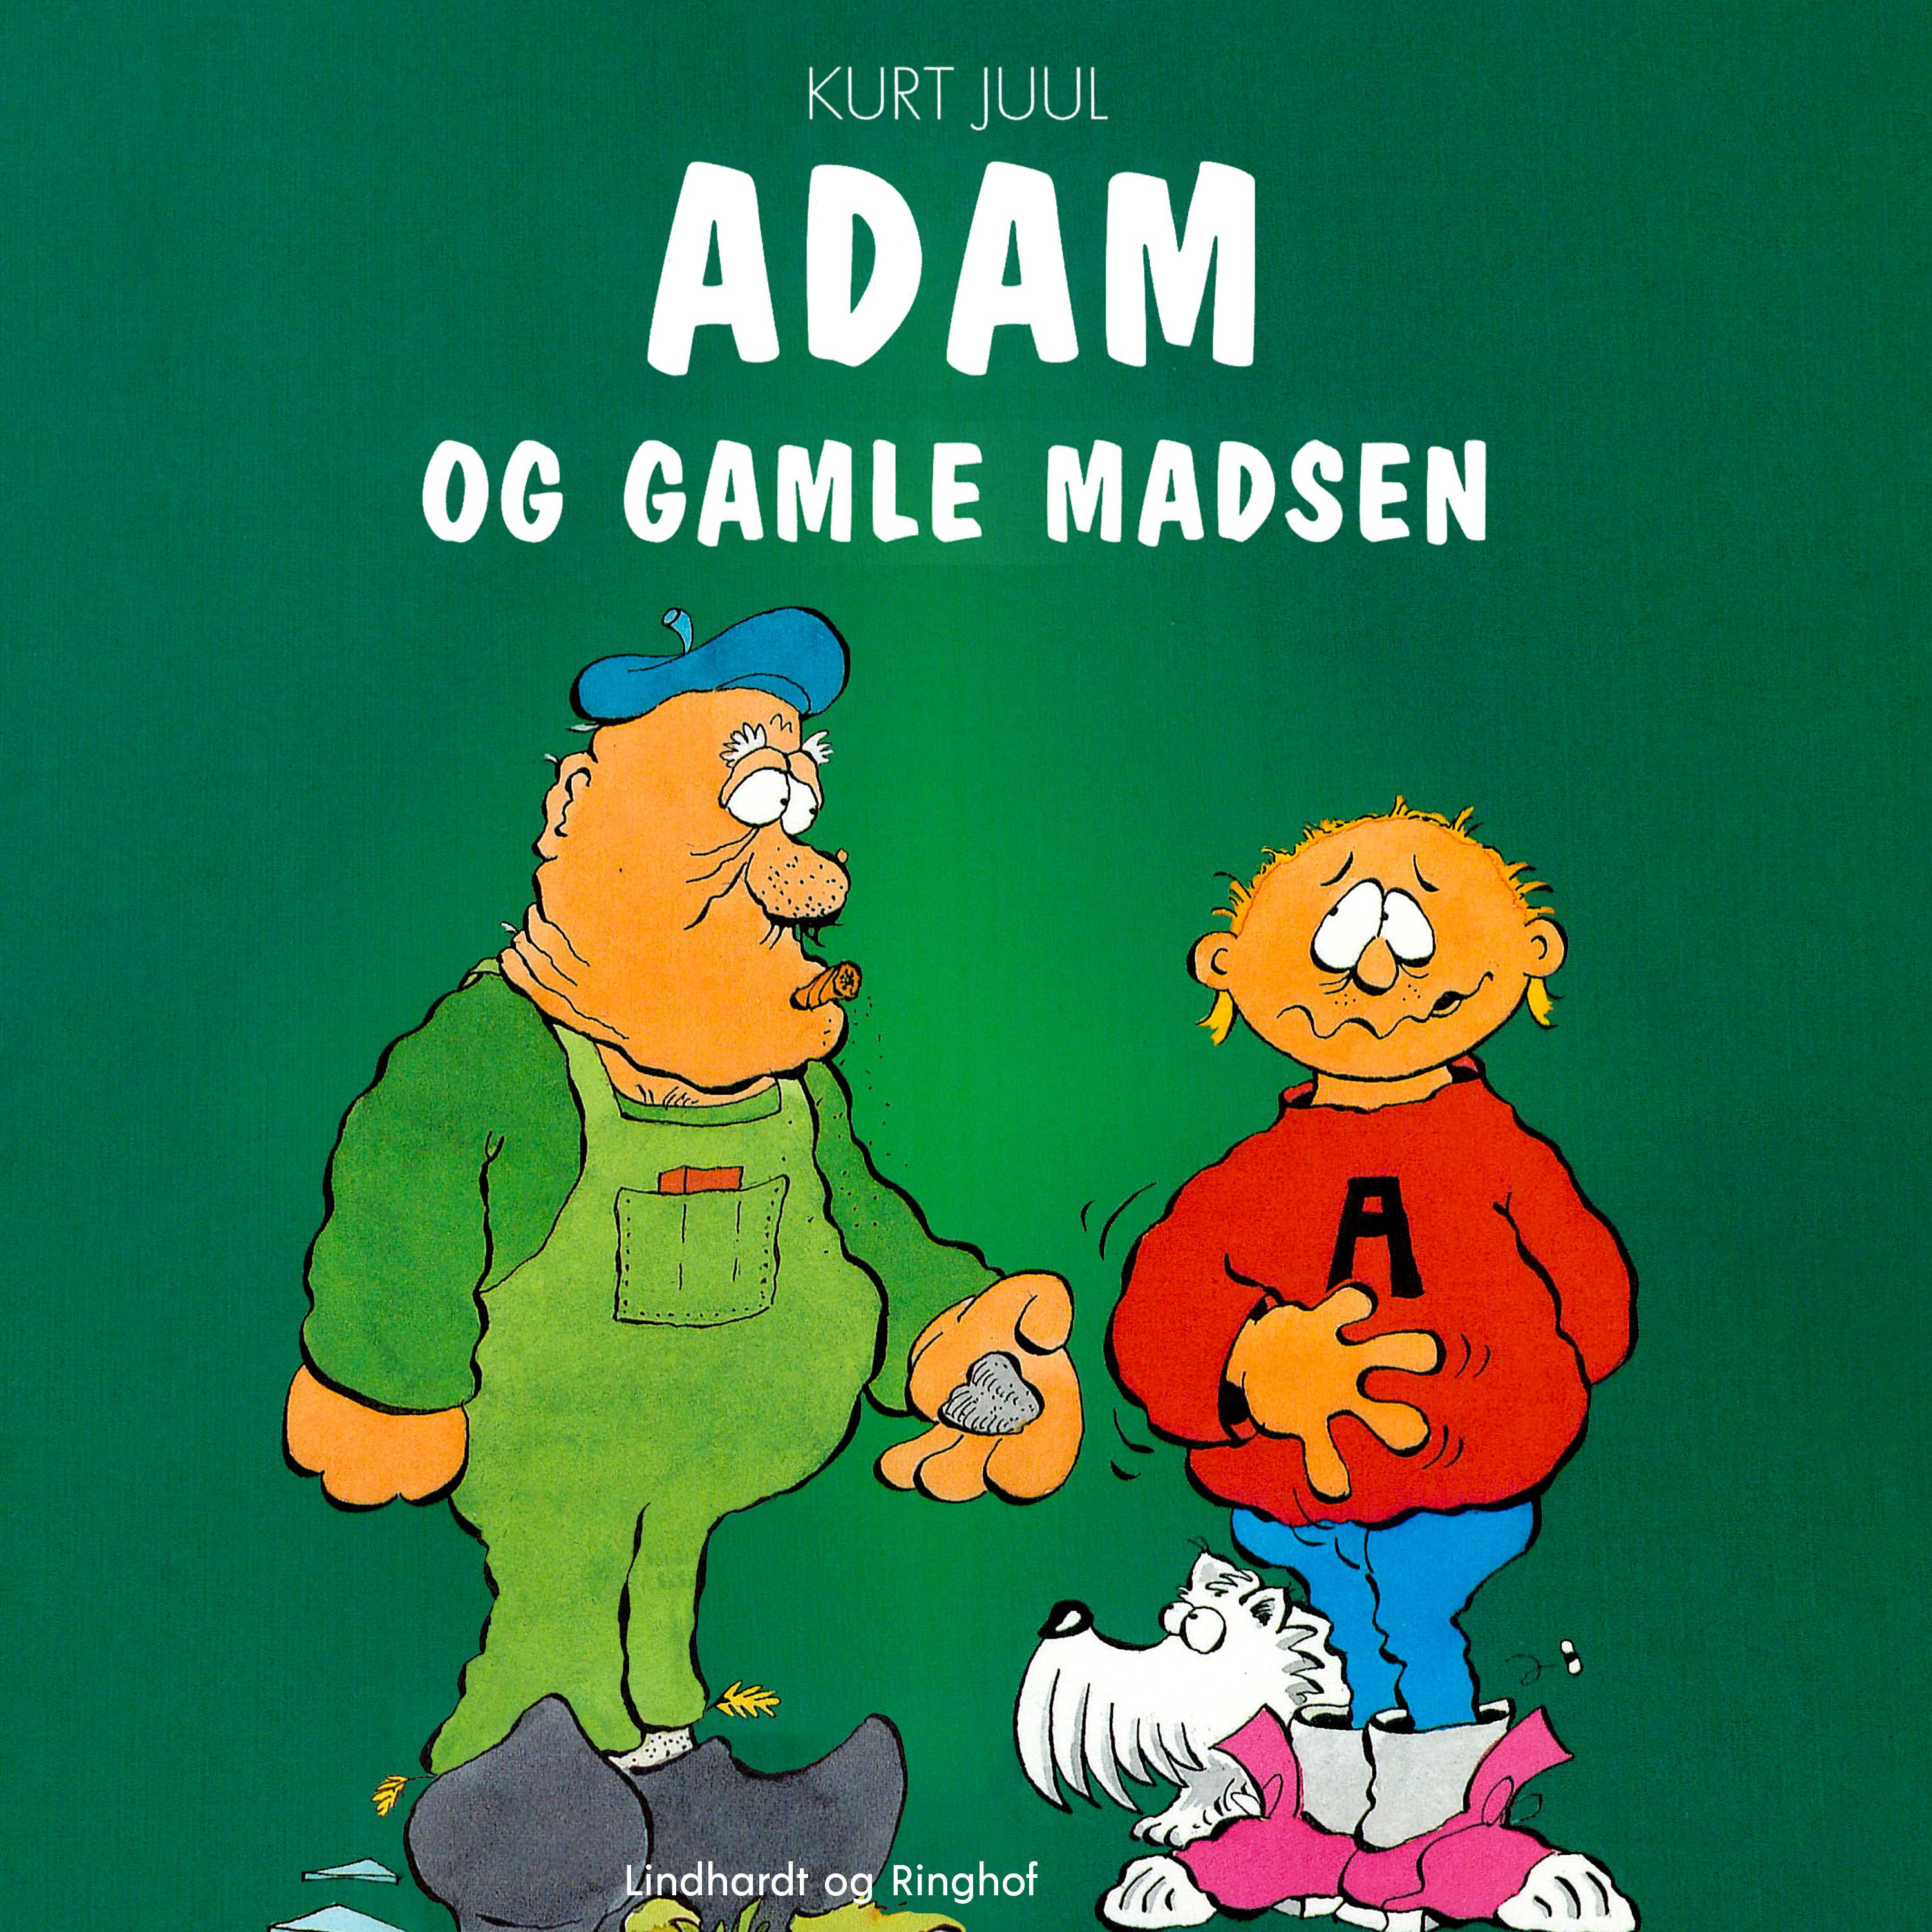 Adam og gamle Madsen, ljudbok av Kurt Juul